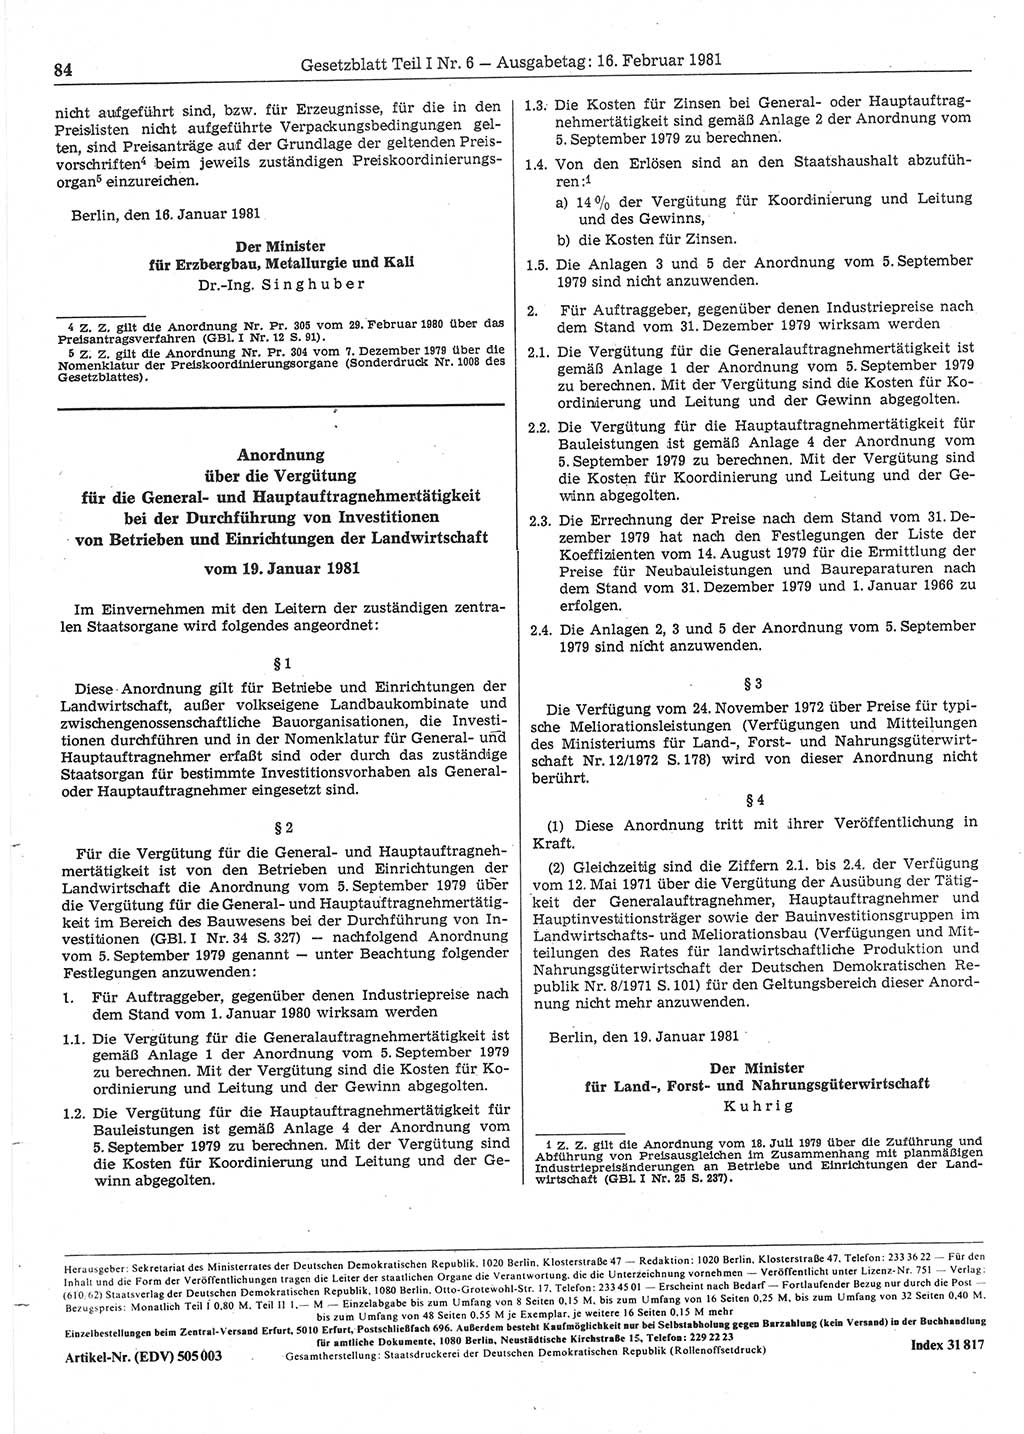 Gesetzblatt (GBl.) der Deutschen Demokratischen Republik (DDR) Teil Ⅰ 1981, Seite 84 (GBl. DDR Ⅰ 1981, S. 84)